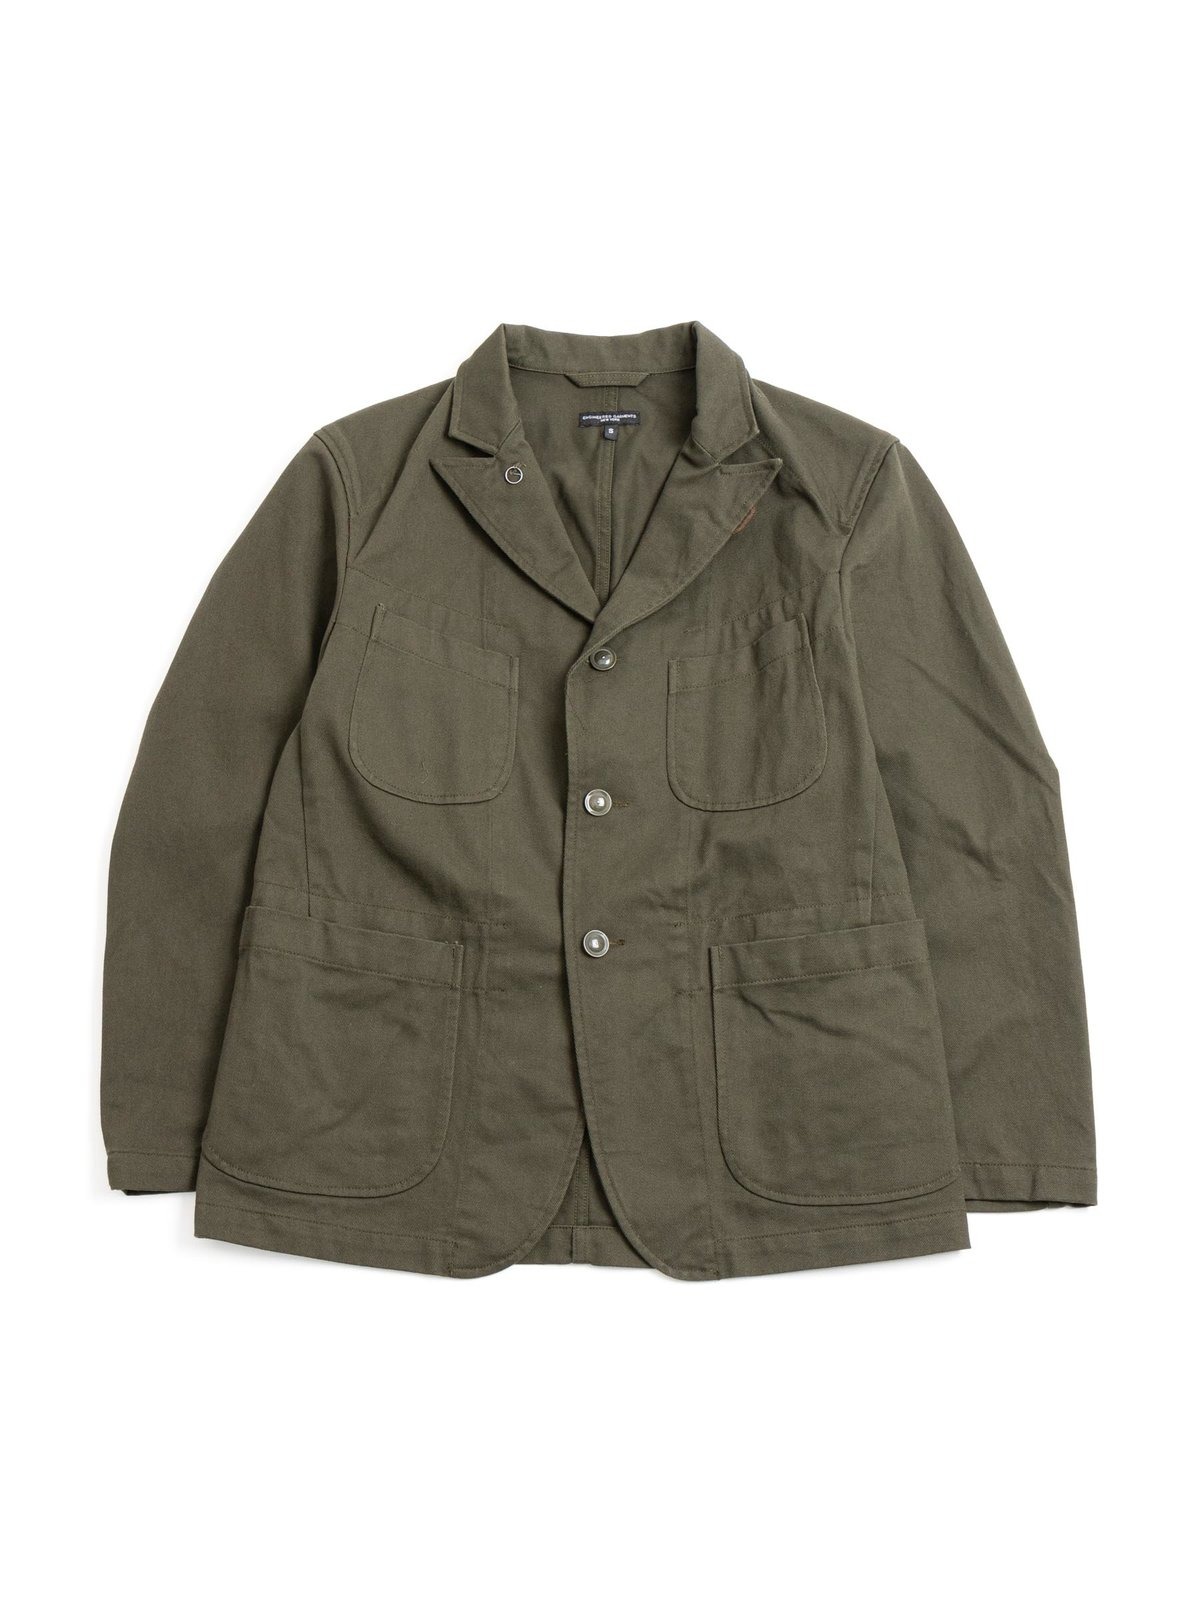 engineered garments daiki suzuki bedford jacket FW22